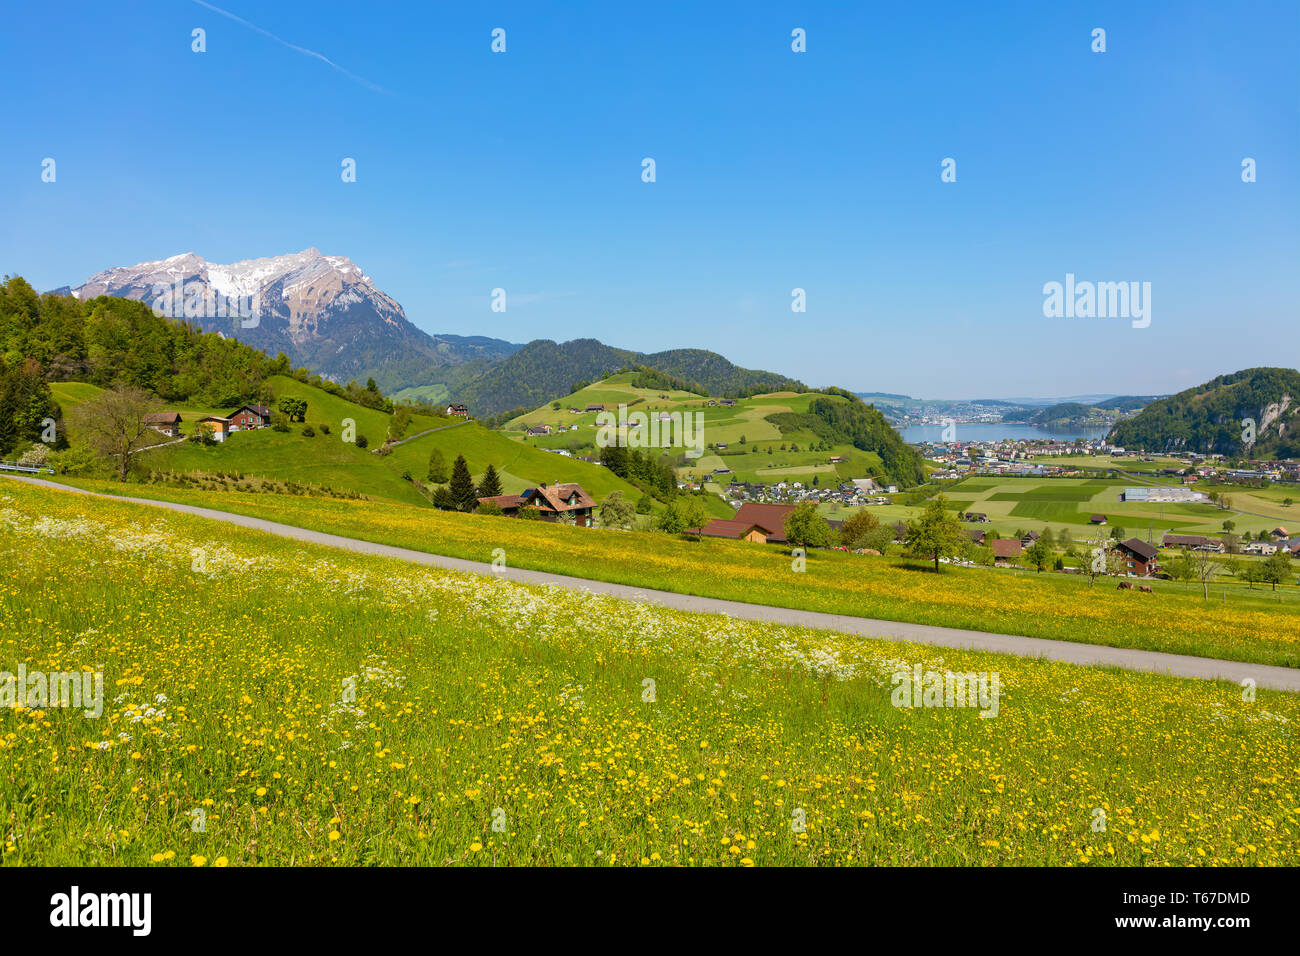 Blick vom Fuß des Mt. Im Schweizer Kanton Nidwalden in Richtung See Luzern Stanserhorn Anfang Mai. Gipfel des Mt. Pilatus auf der linken Seite Stockfoto